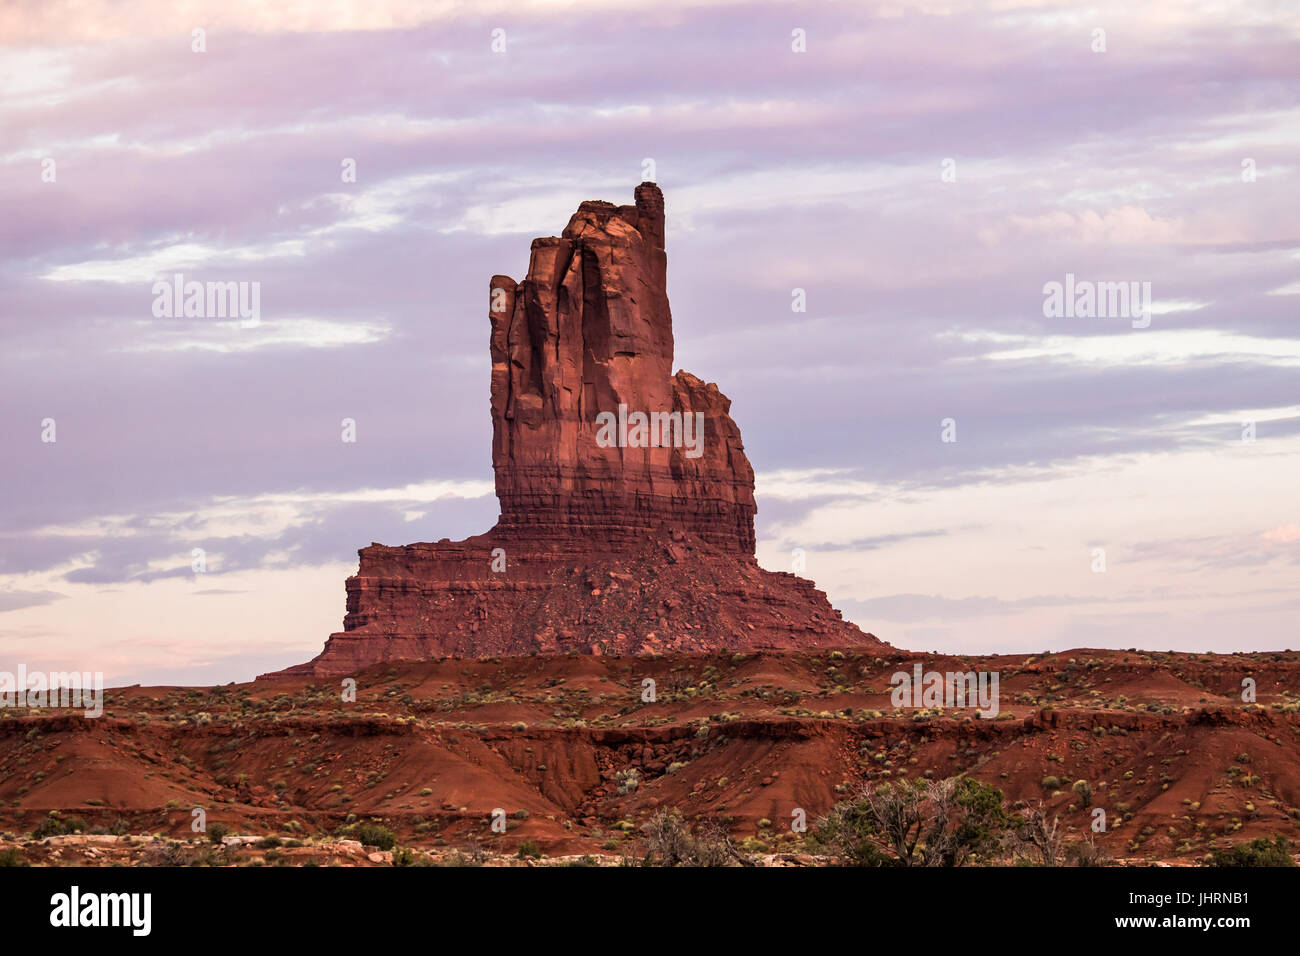 Struttura geologica in Monument Valley Tribal Park, Stati Uniti d'America; la sera presto; luce nuvole in background Foto Stock